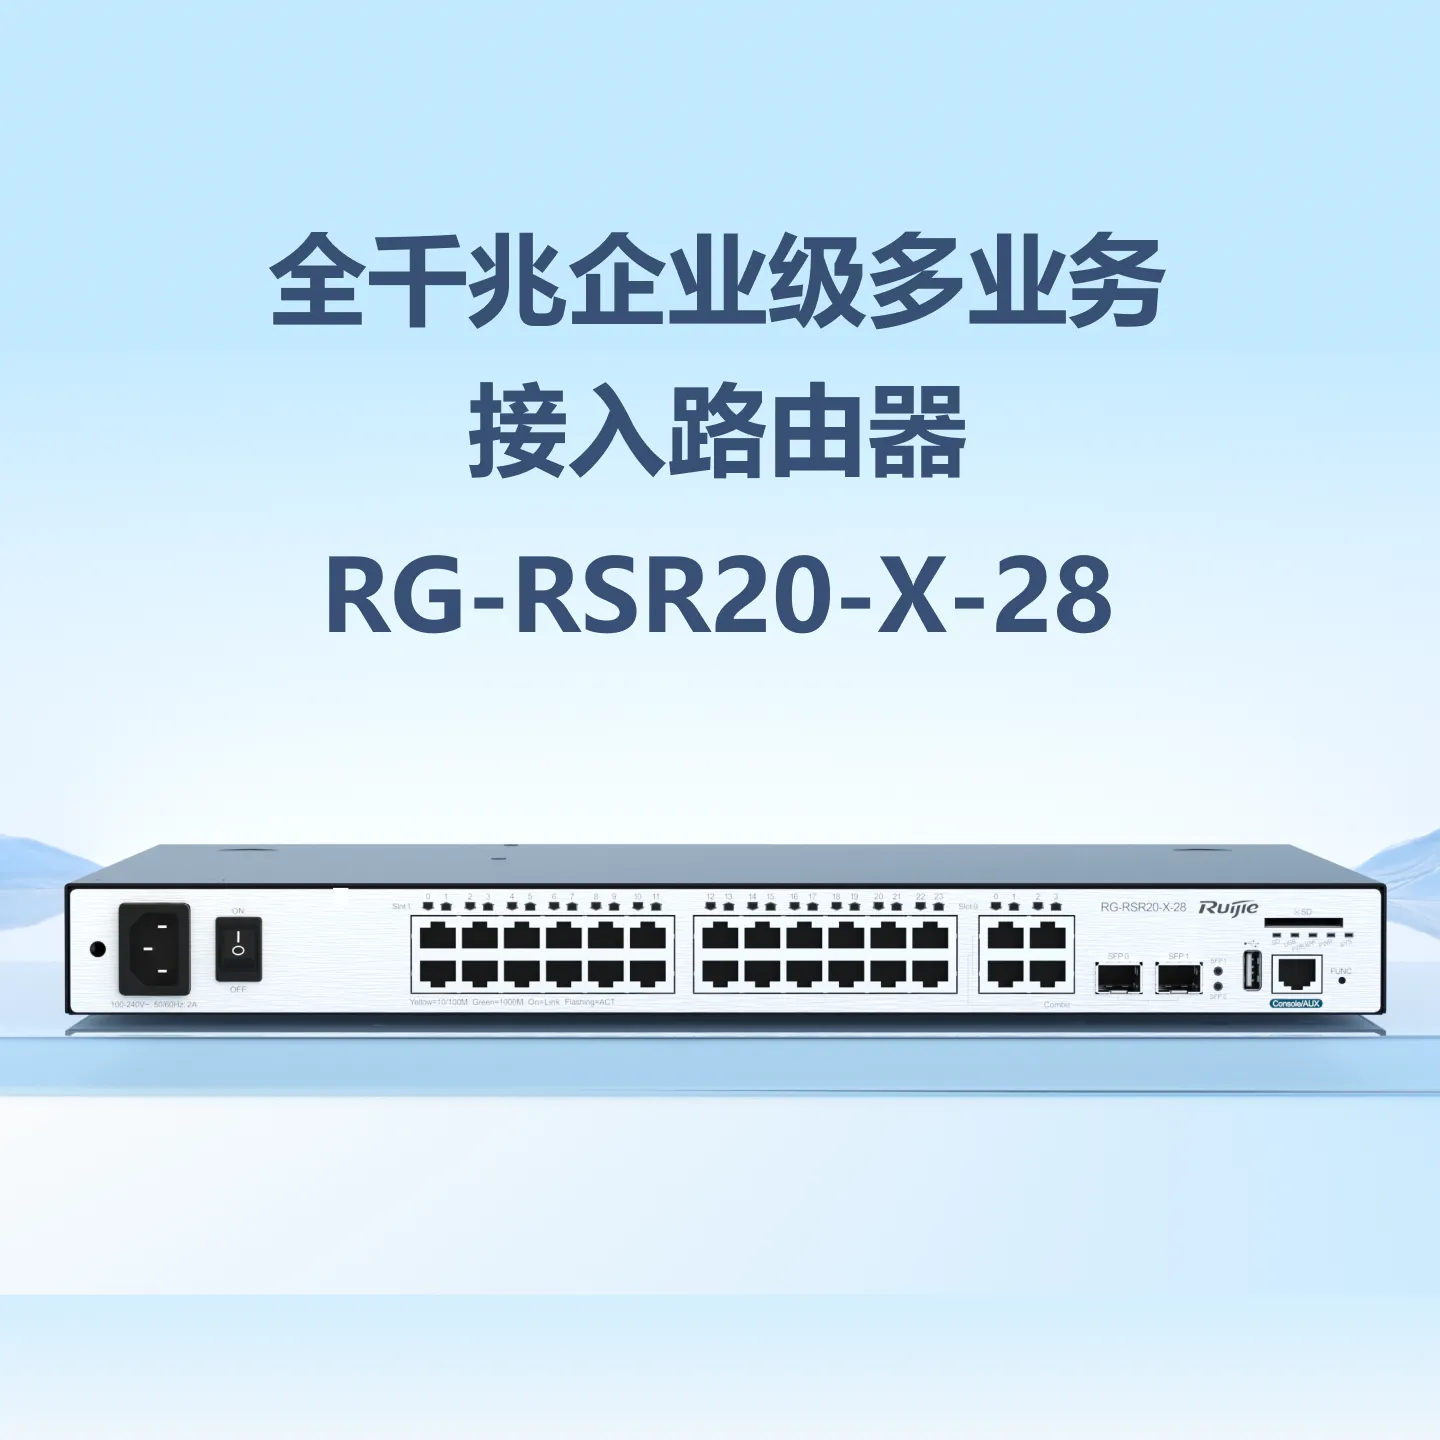 RG-RSR20-X-28